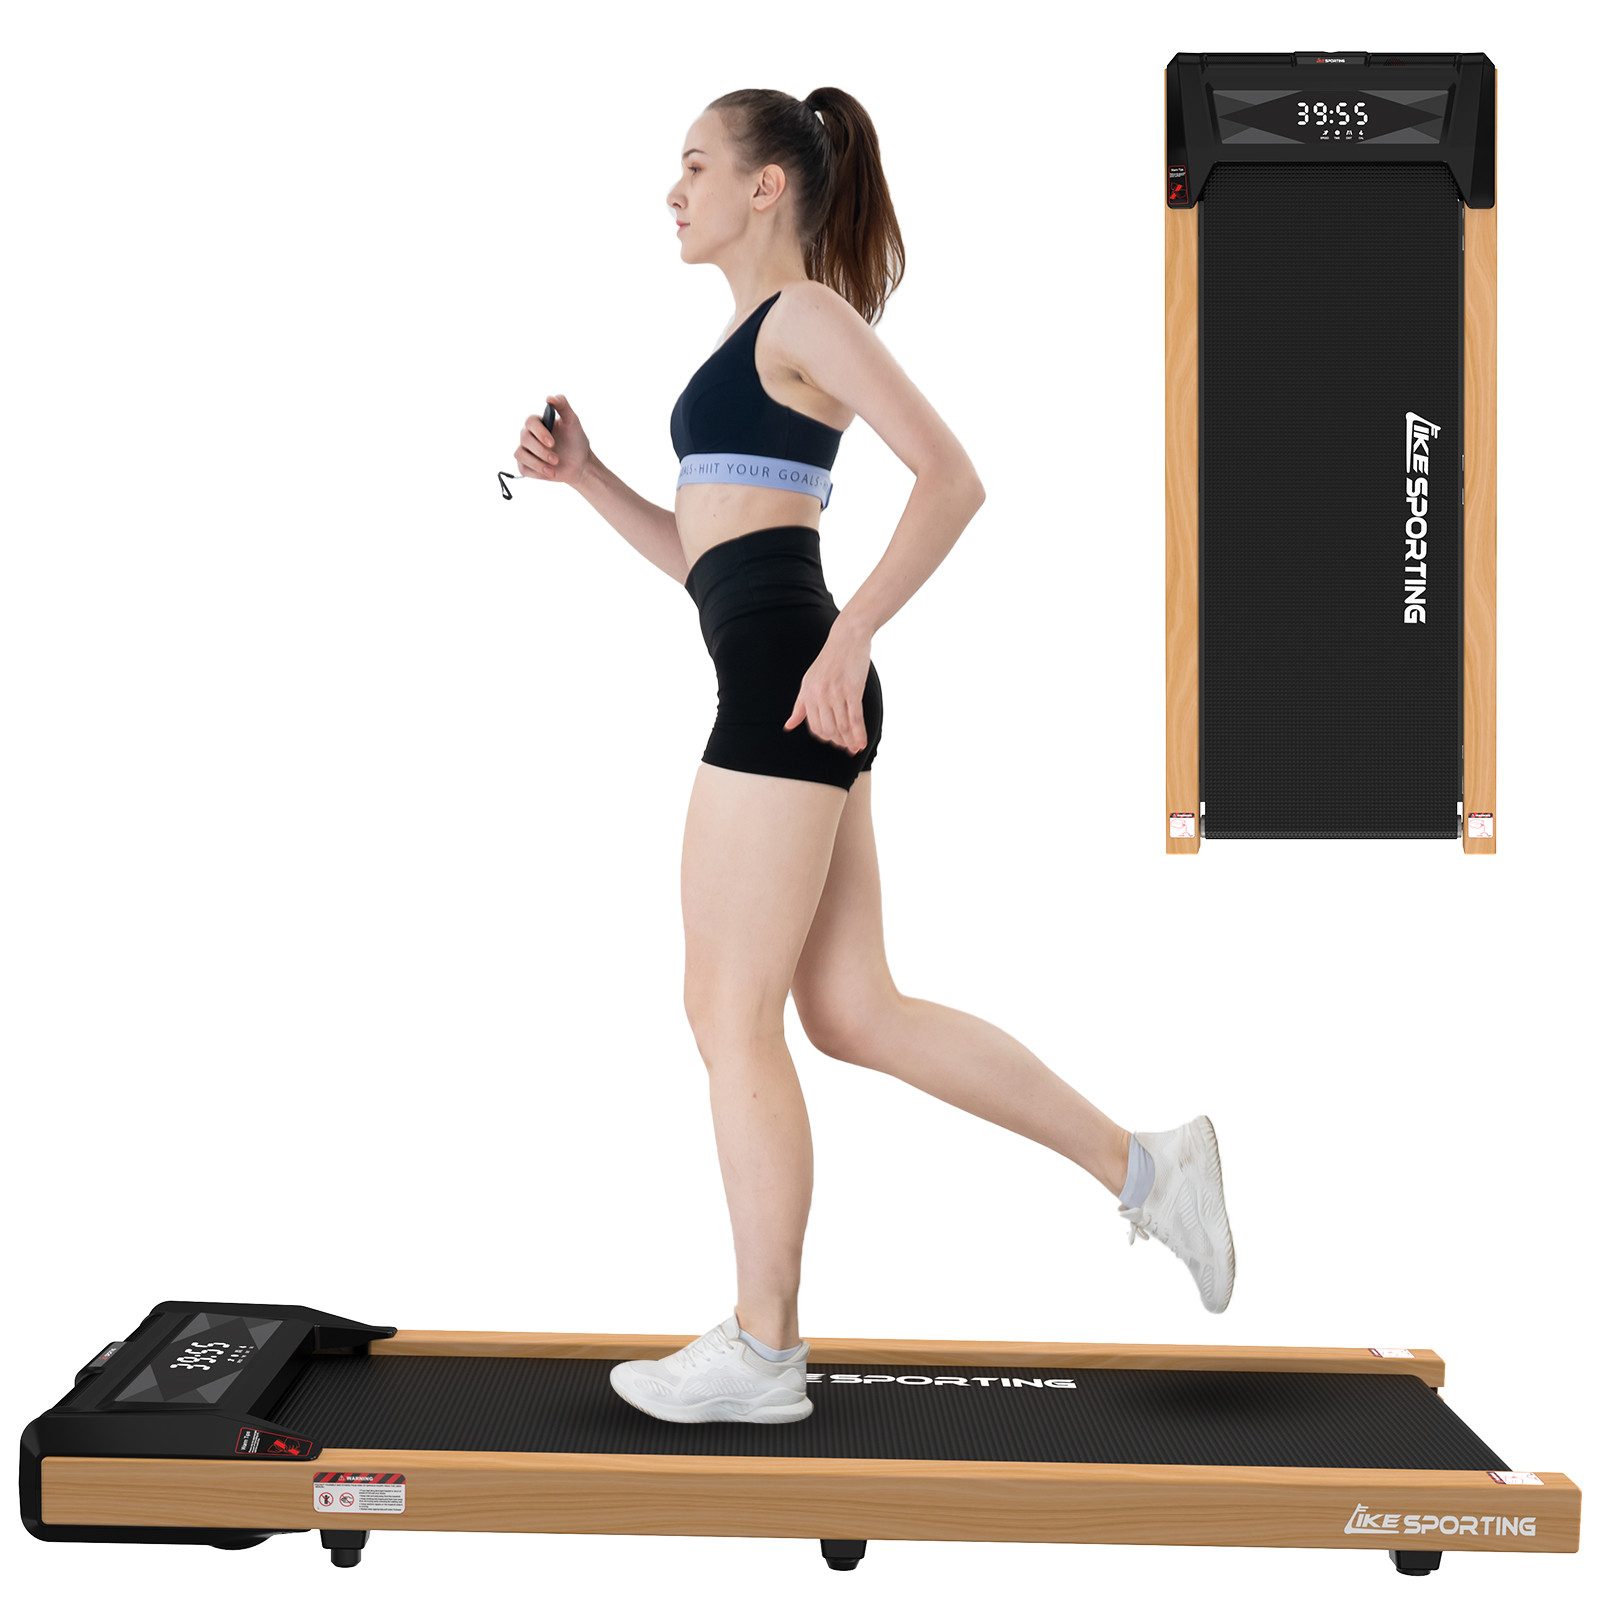 CITYSPORTS Laufband Likesporting 550W Treadmill mit Bluetooth für Zuhause und im Büro (Mit Schmiermittel, Toolkit), 1-6km/h Walking/jogging Pad mit LED-Anzeige und Fernbedienung